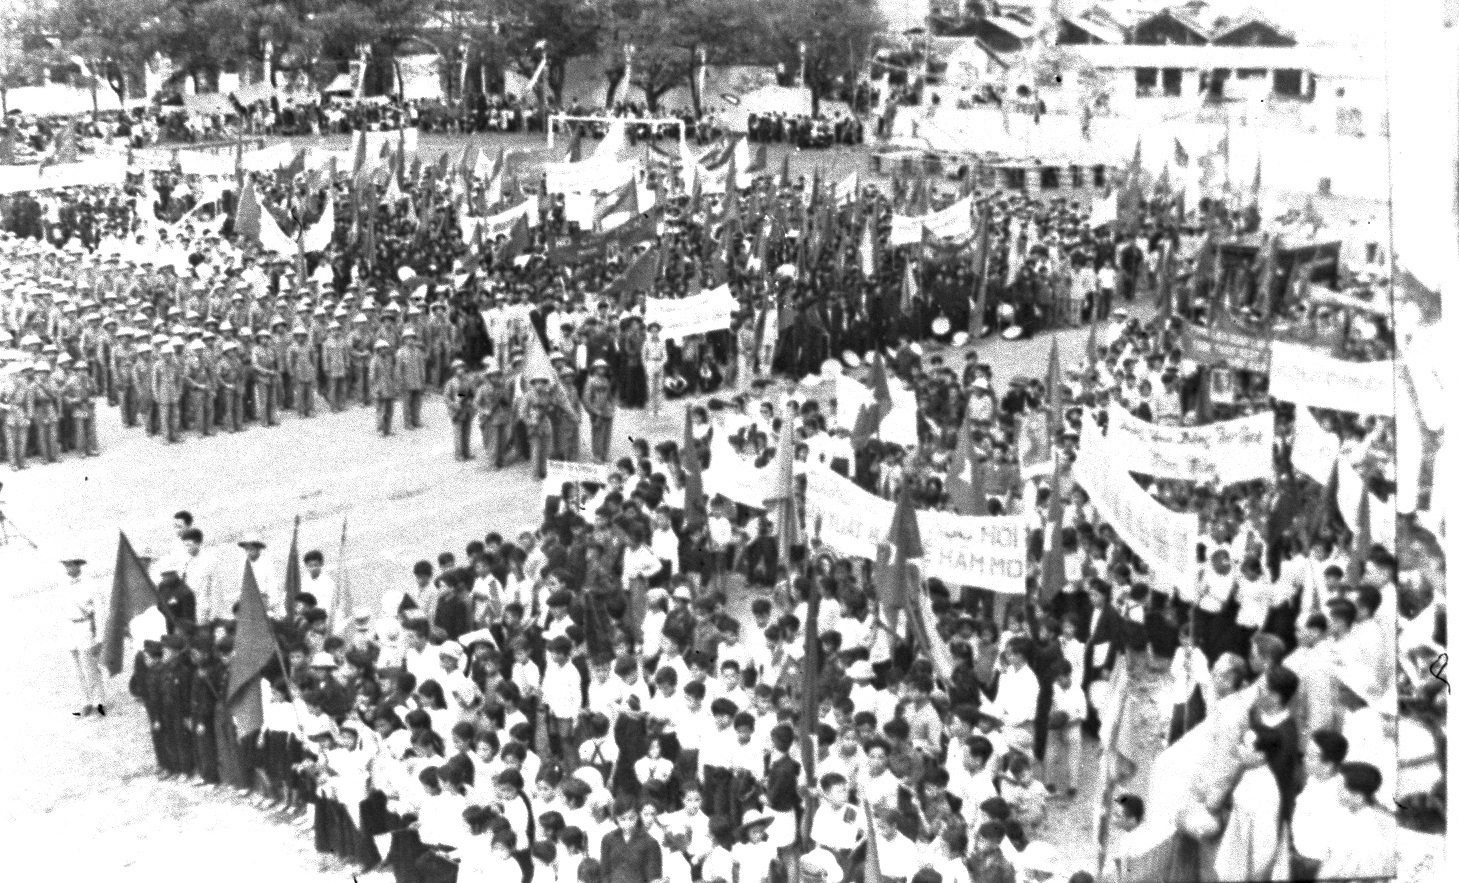 Quang cảnh và những hoạt động diễn ra trong cuộc mít tinh mừng vùng mỏ được giải phóng tổ chức tại Hòn Gai . Ảnh tư liệu của Bảo tàng Quảng Ninh.